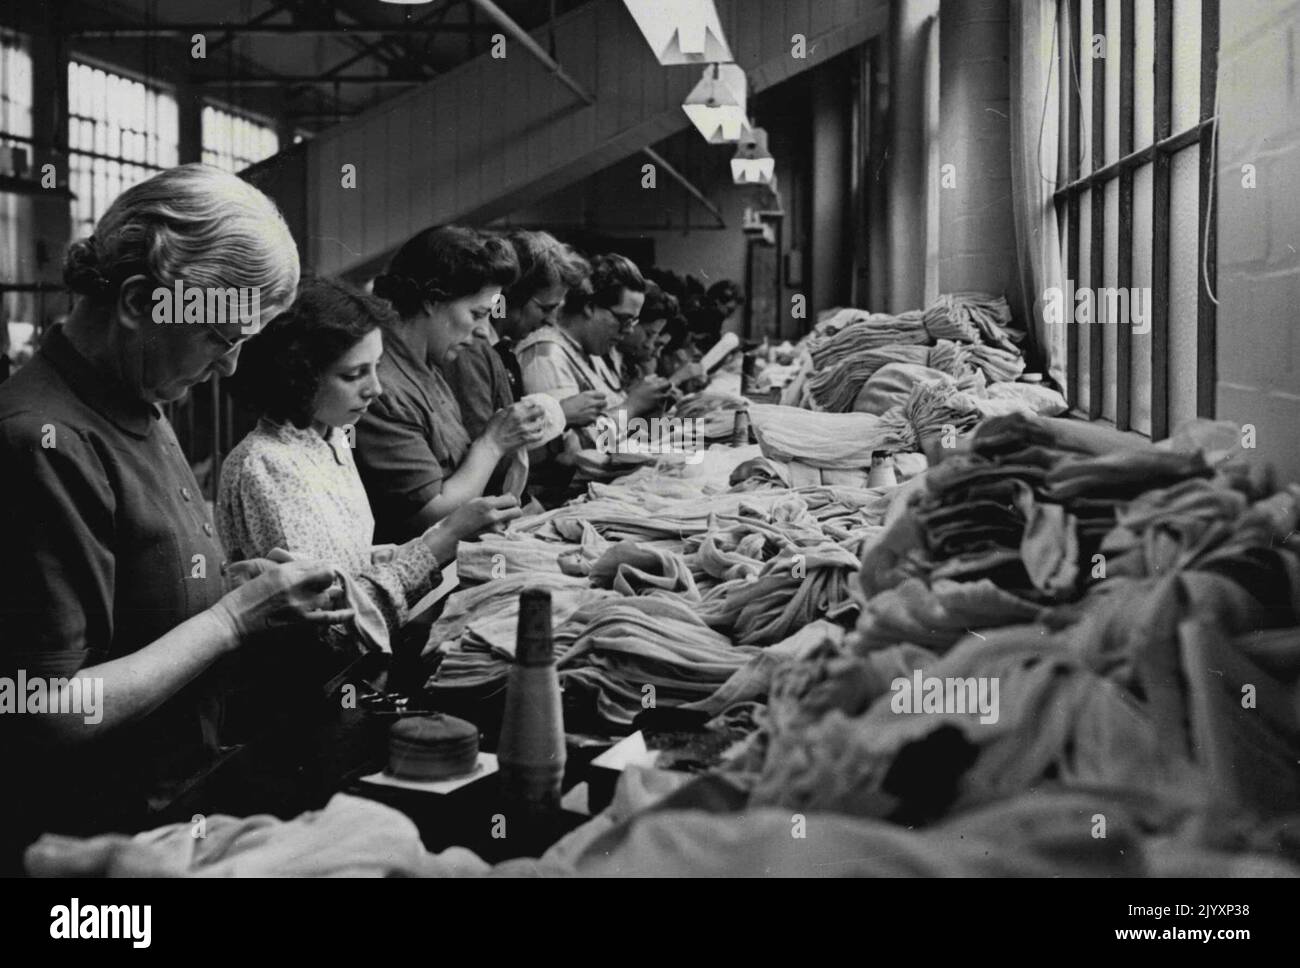 Nylon sulla strada -- Una scena occupata nella fabbrica di Nottingham di I. & R. Morley. Questi lavoratori fanno l'ispezione finale dei nylon finiti prima che si incontrino con il processo di tintura, e sottoponono le calze ad un processo scientifico di sgrossatura conosciuto come "cratching". Le calze di nylon, tanto attese dalle donne britanniche, saranno nei negozi entro Natale. Le industrie della calzetteria, che impiegano 60.000 lavoratori, sono impegnate in un'azione completa per portare sul mercato i nylon in quantità e le forniture inizieranno ad apparire dopo dicembre 1st. Novembre 13, 1946. (Foto di Reuterphoto) Foto Stock